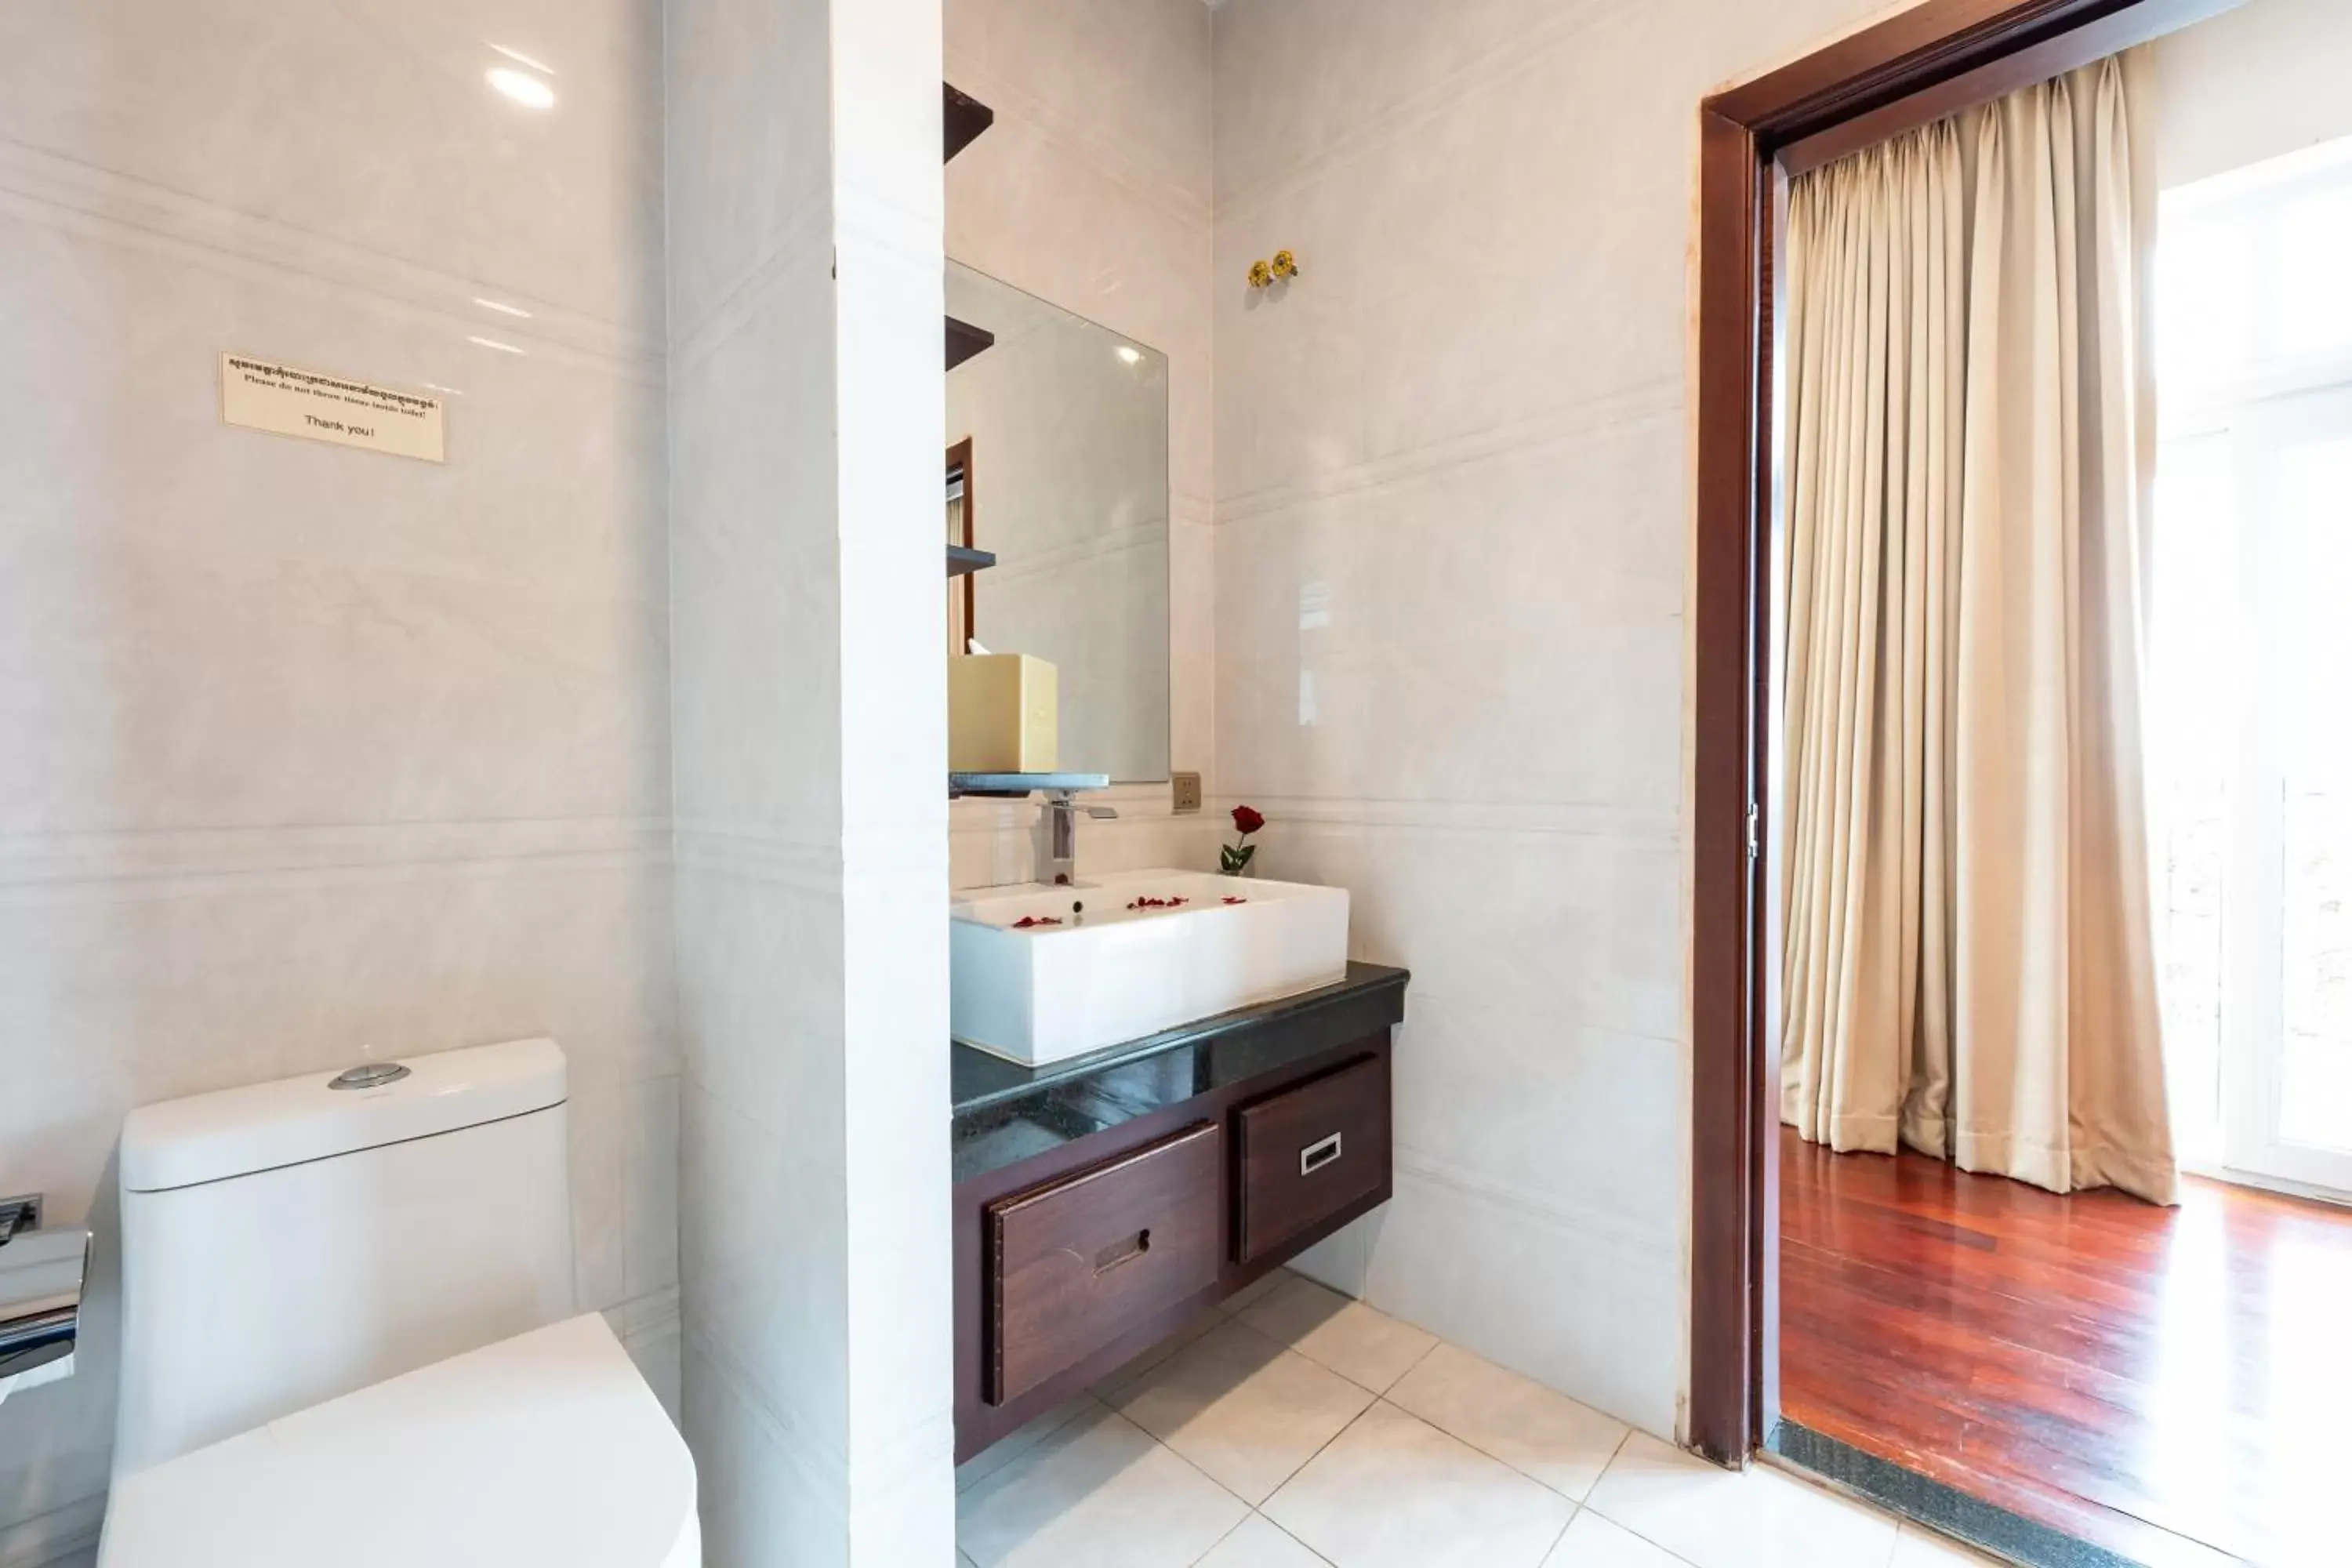 Bathroom in Lbn Asian Hotel